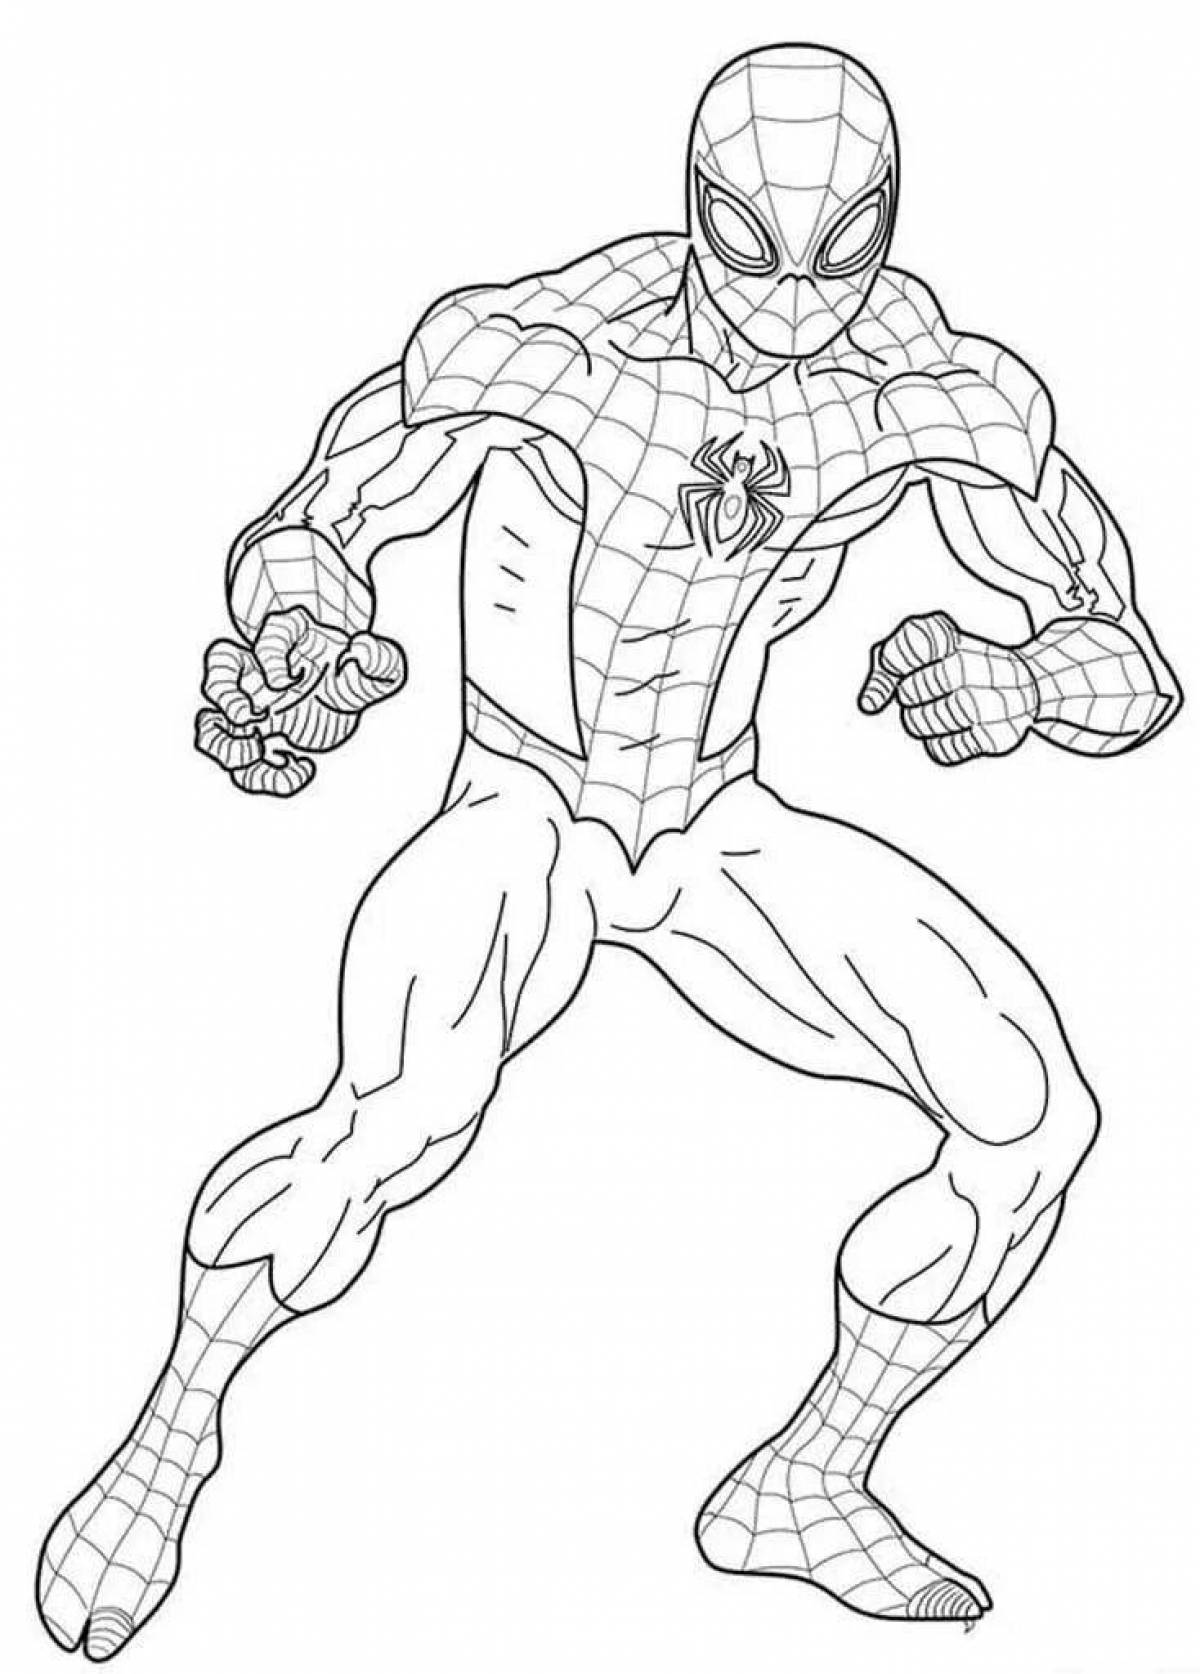 Чудесно детализированная страница раскраски человек-паук